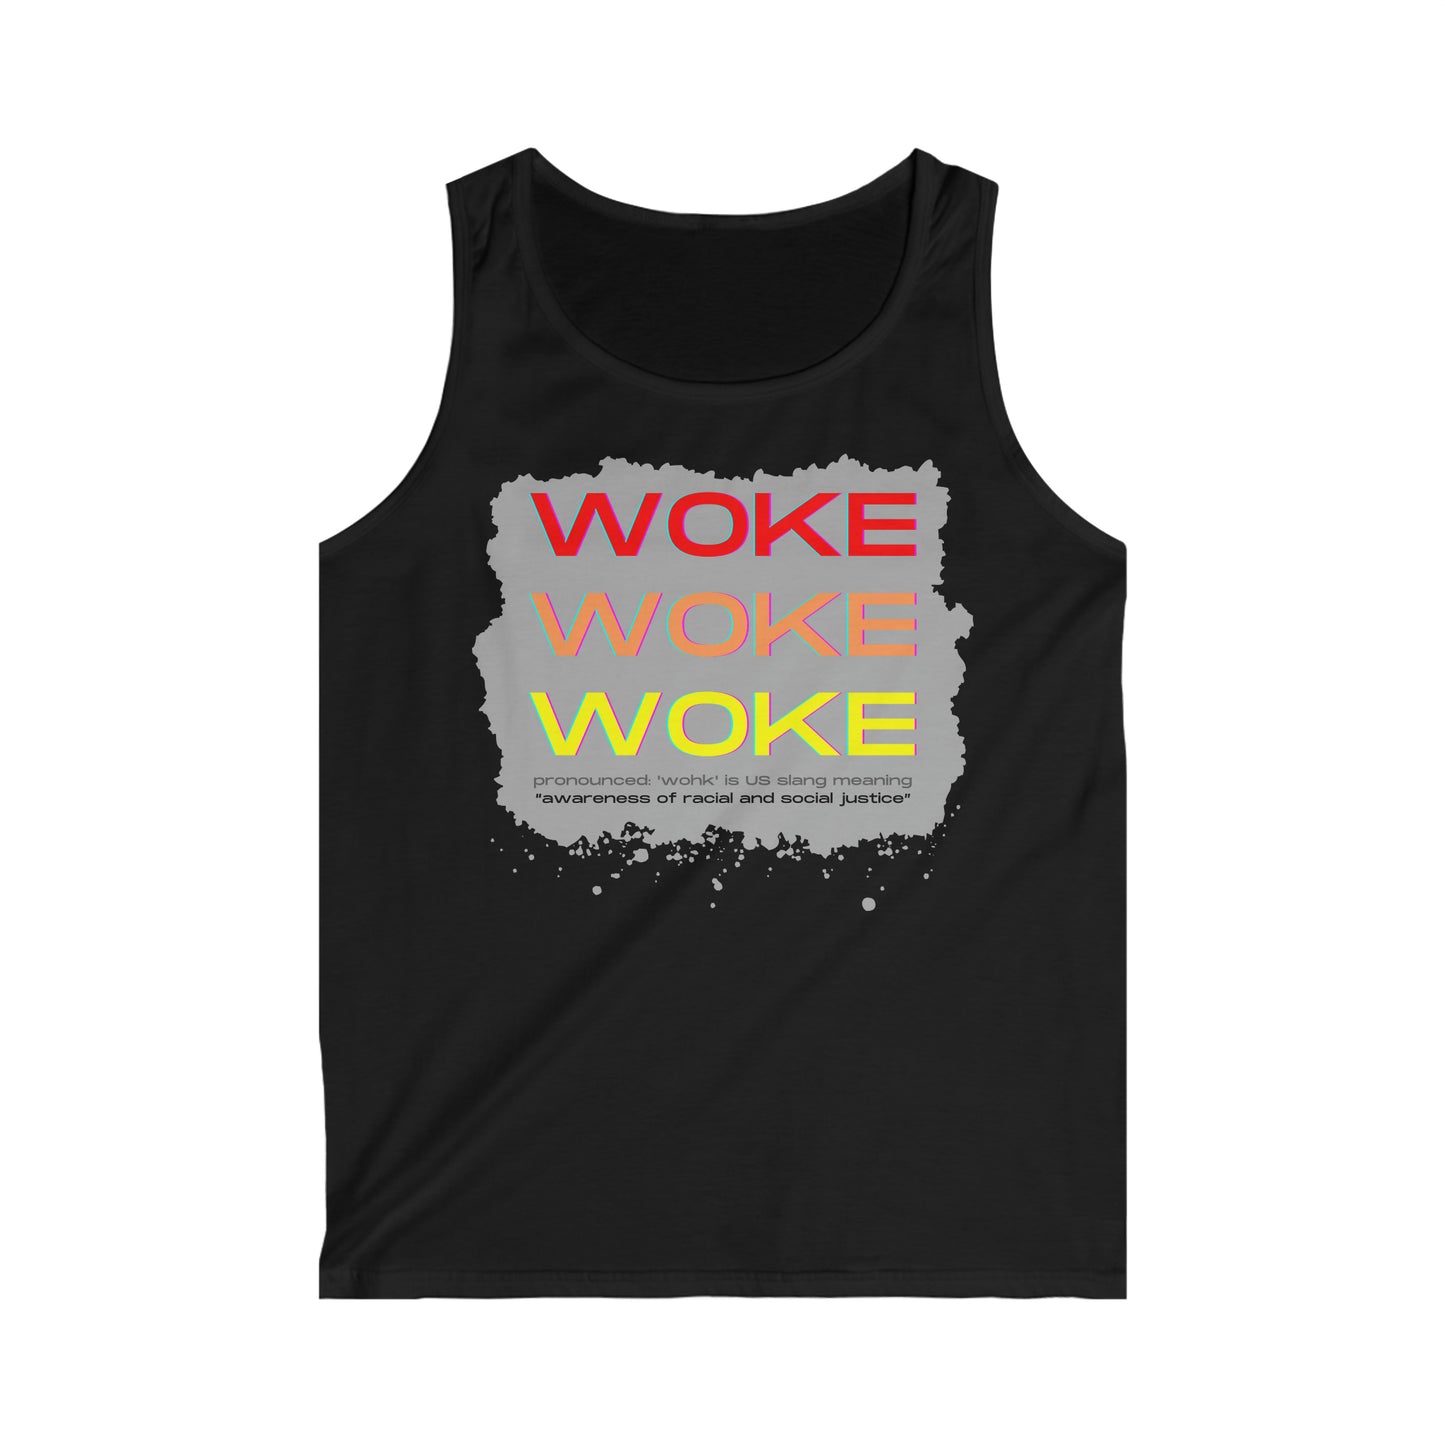 Woke Woke Woke Men's Softstyle Tank Top